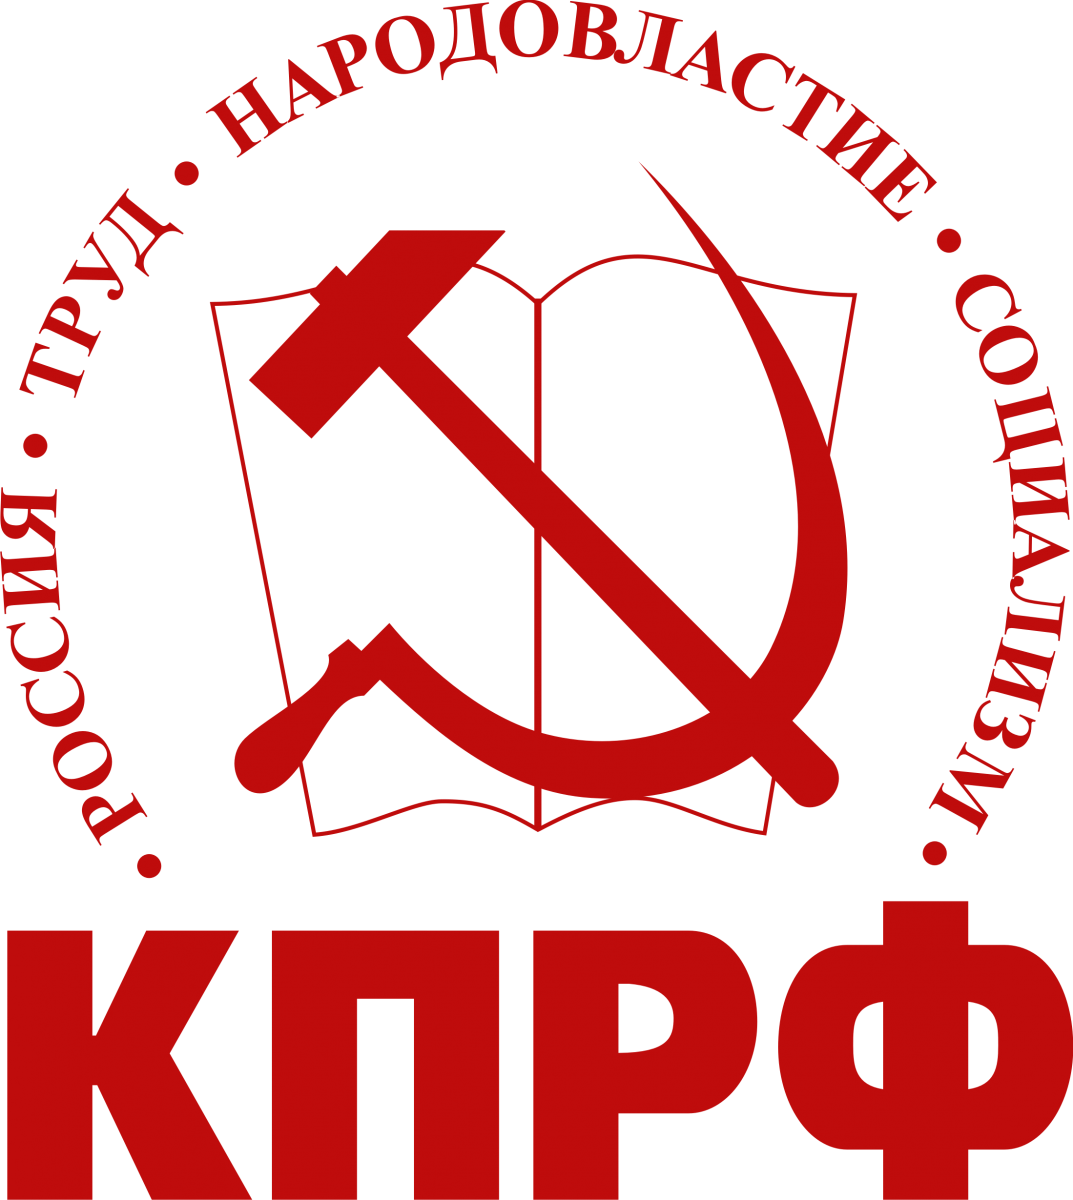 КПРФ - Коммунистическая политическая партия Российской Федерации